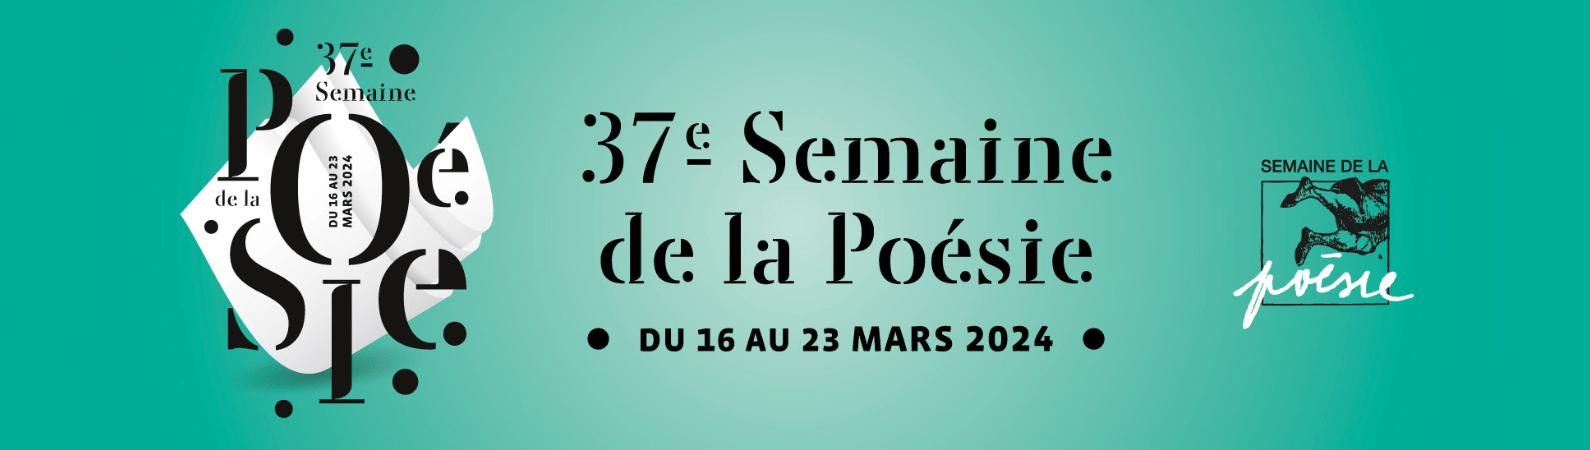 Participez à la Semaine de la poésie de Clermont-Ferrand en mars ! - nouvelle fenêtre